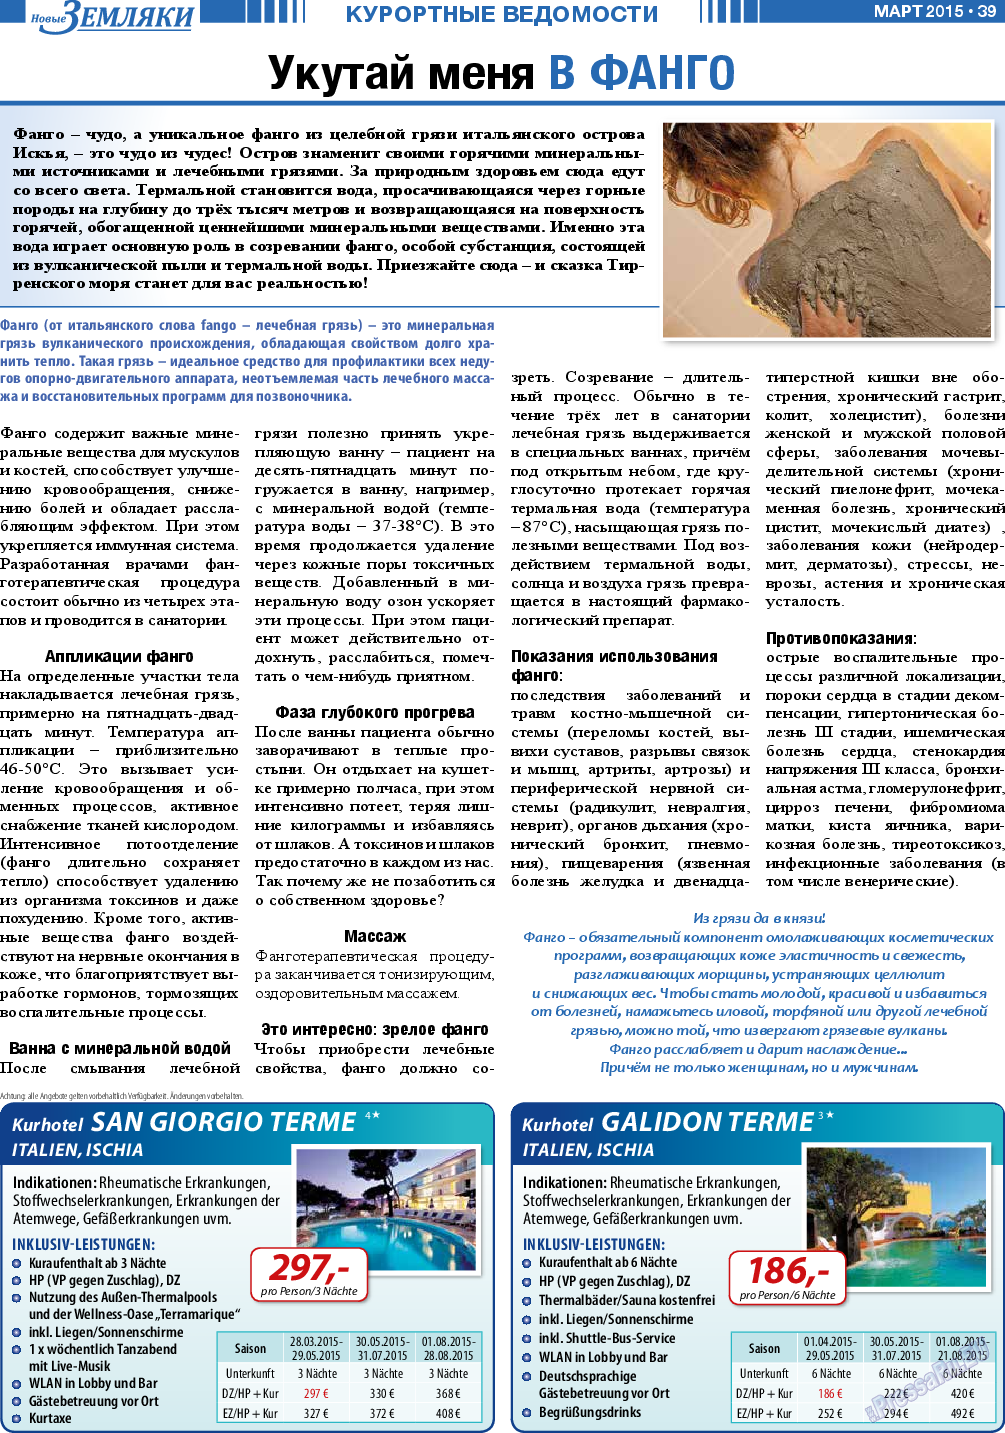 Новые Земляки, газета. 2015 №3 стр.39